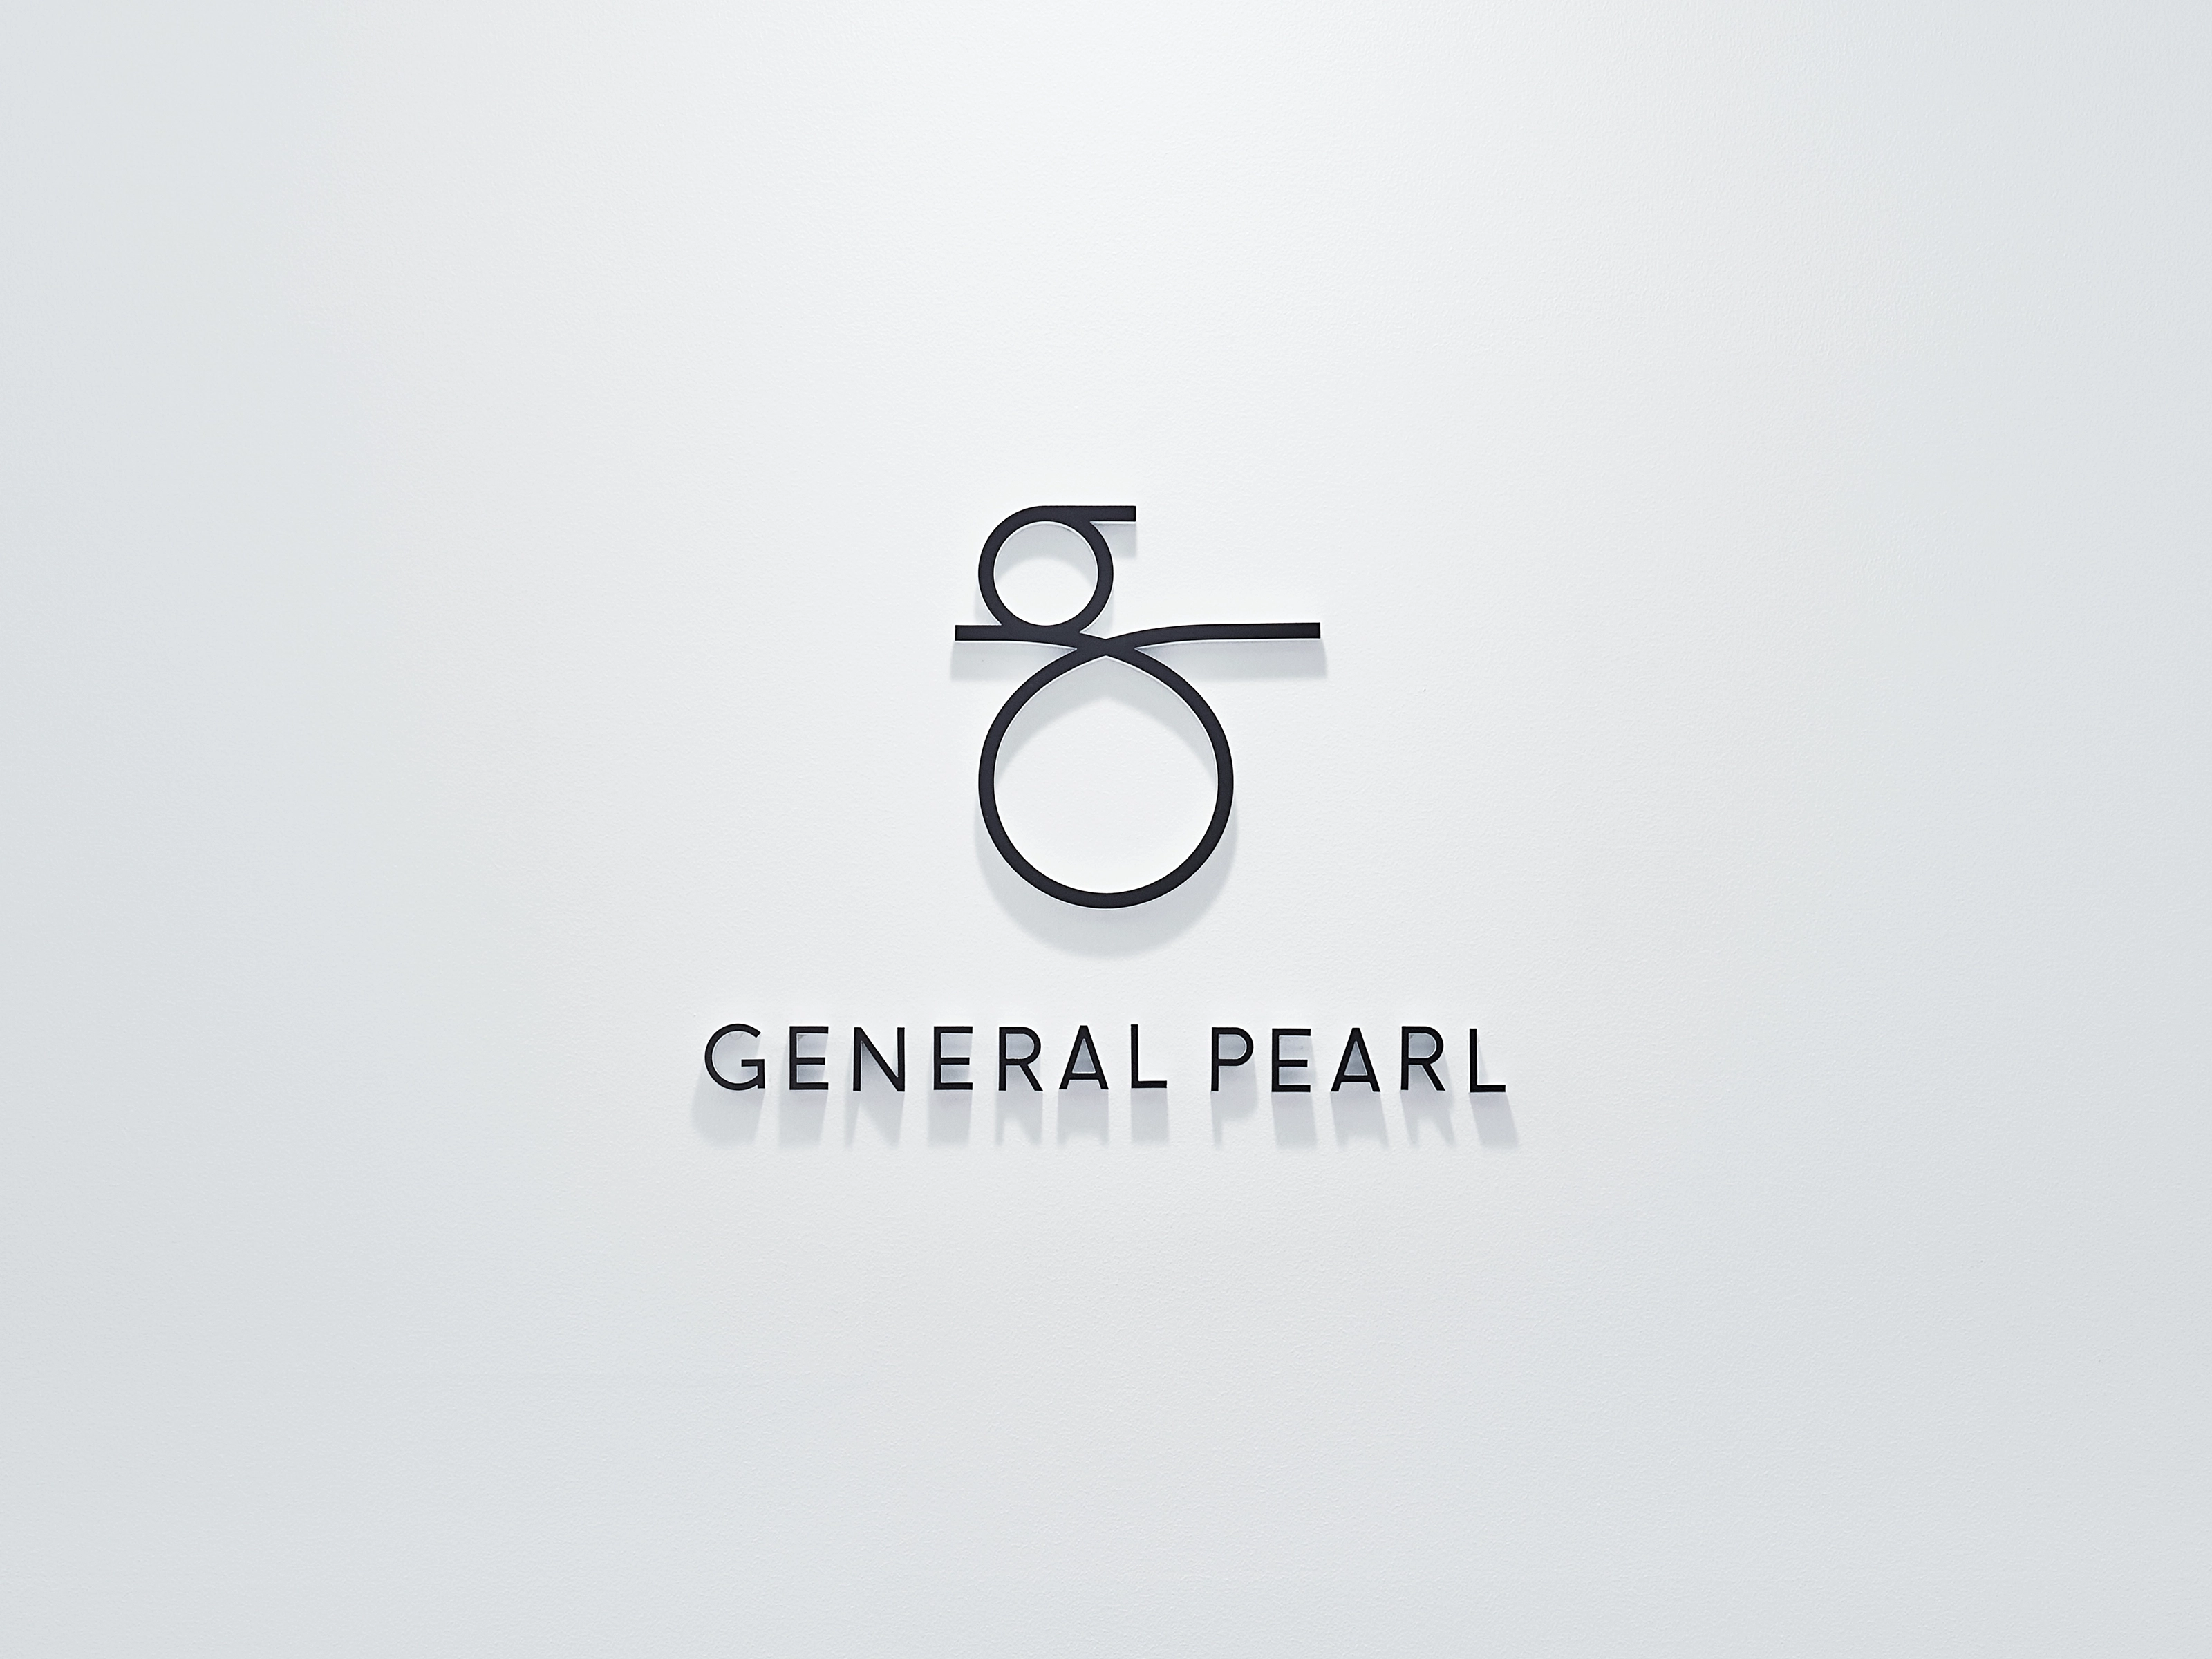 GENERAL PEARL